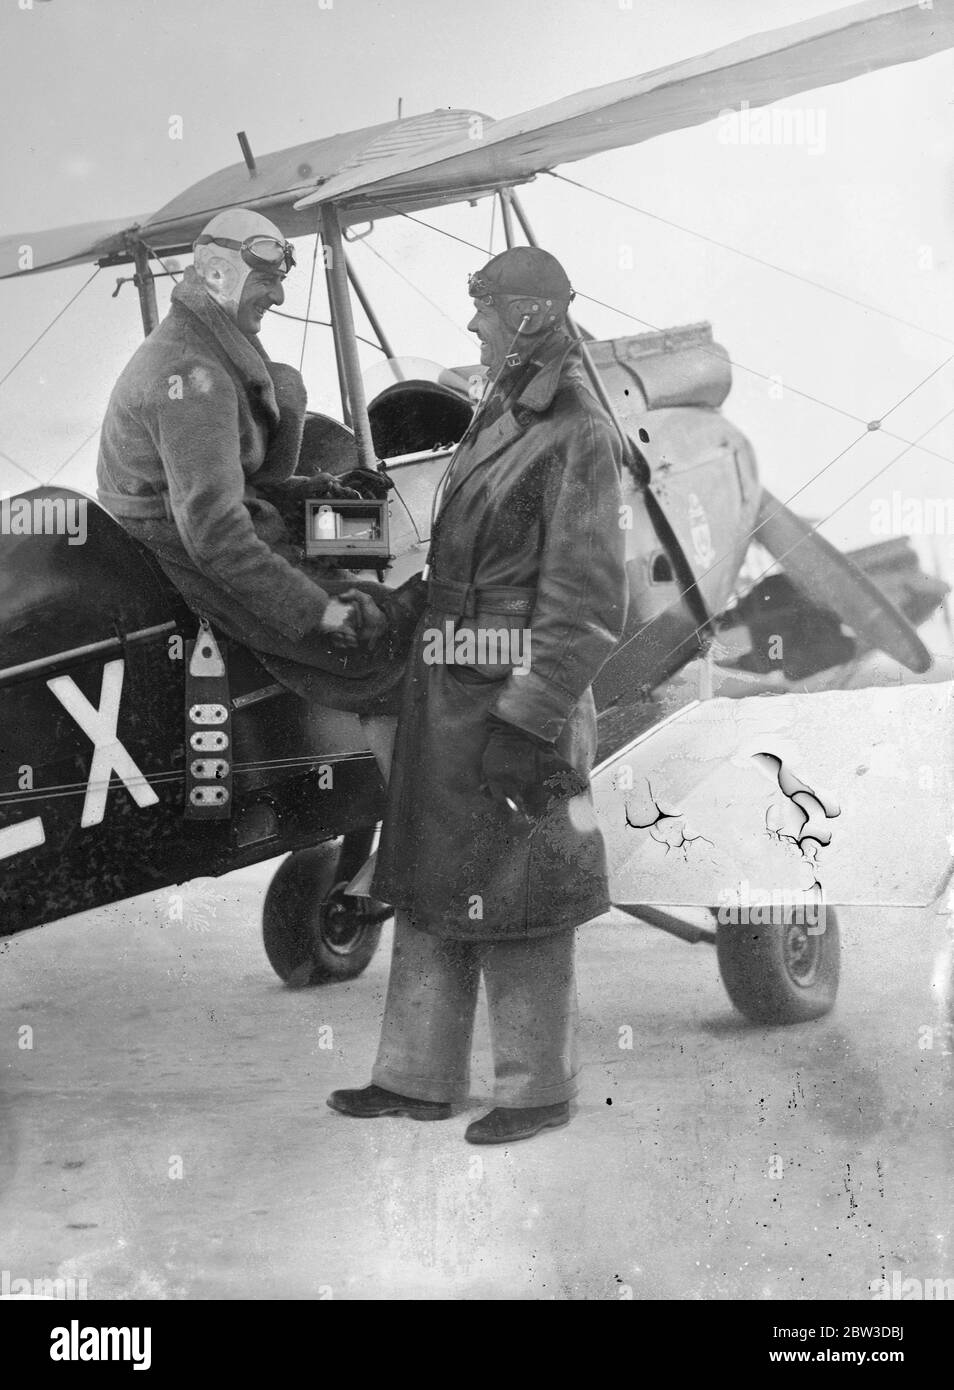 Dudley Froy nimmt in die Luft. Qualifiziert sich in Rekordzeit . Dudley Froy (links) gratuliert von Kapitän B H Alliott, sein Lehrer, am Brooklands Flying Club nach dem Qualifying in Rekordzeit. 13. Oktober 1935 Stockfoto